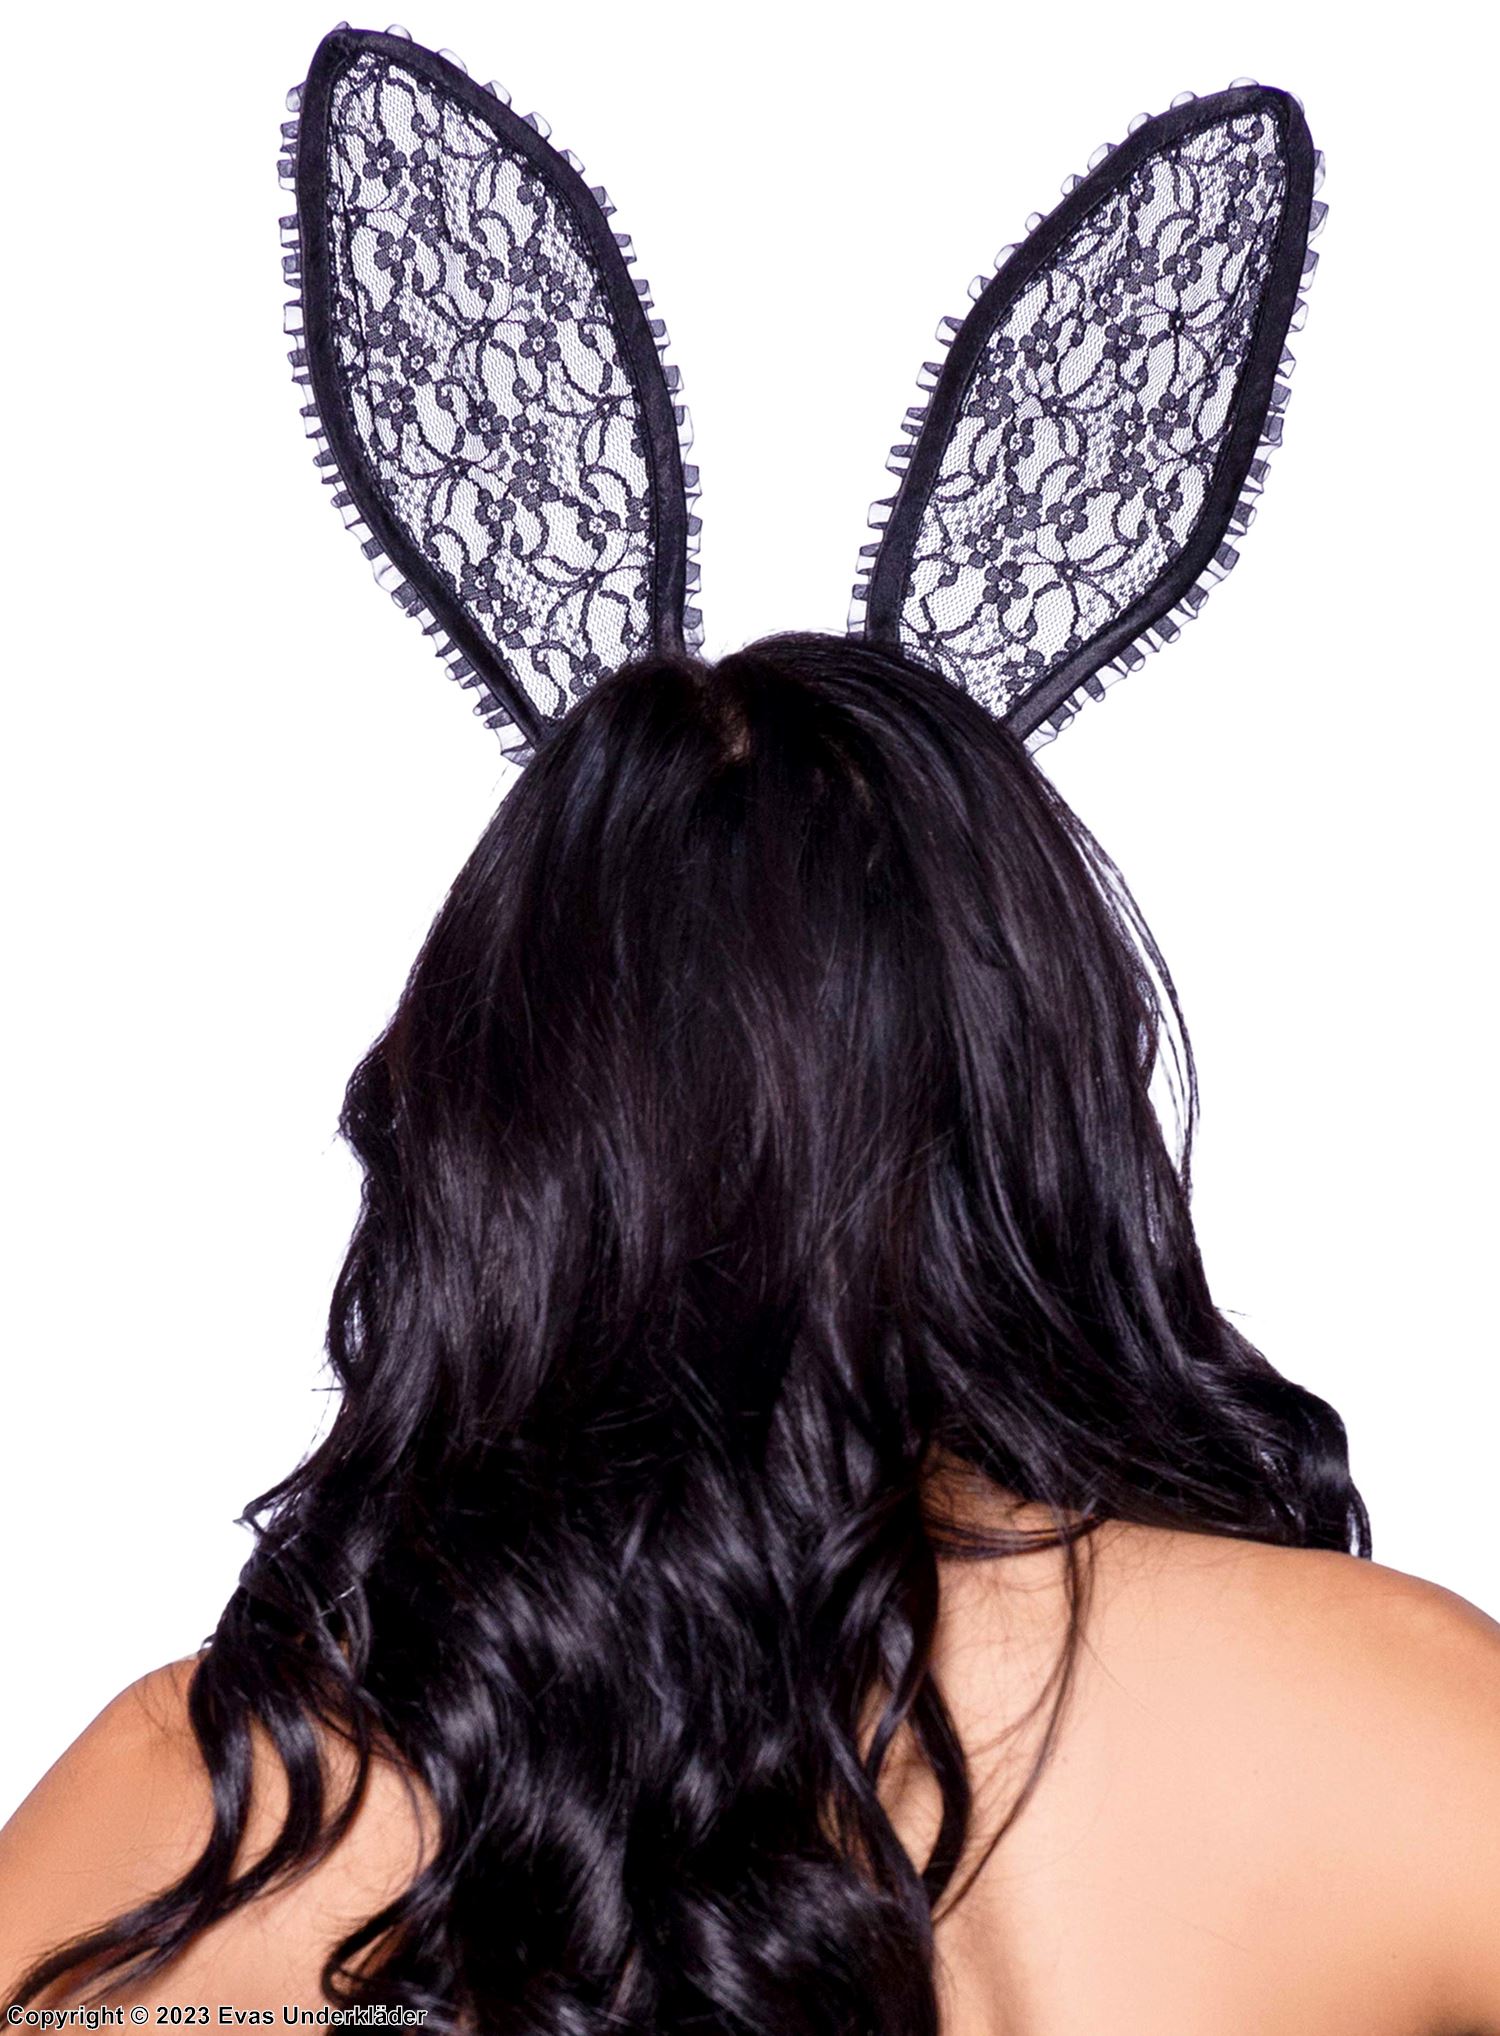 Playboy-kanin, huvudbonad med stora öron och blommig spets